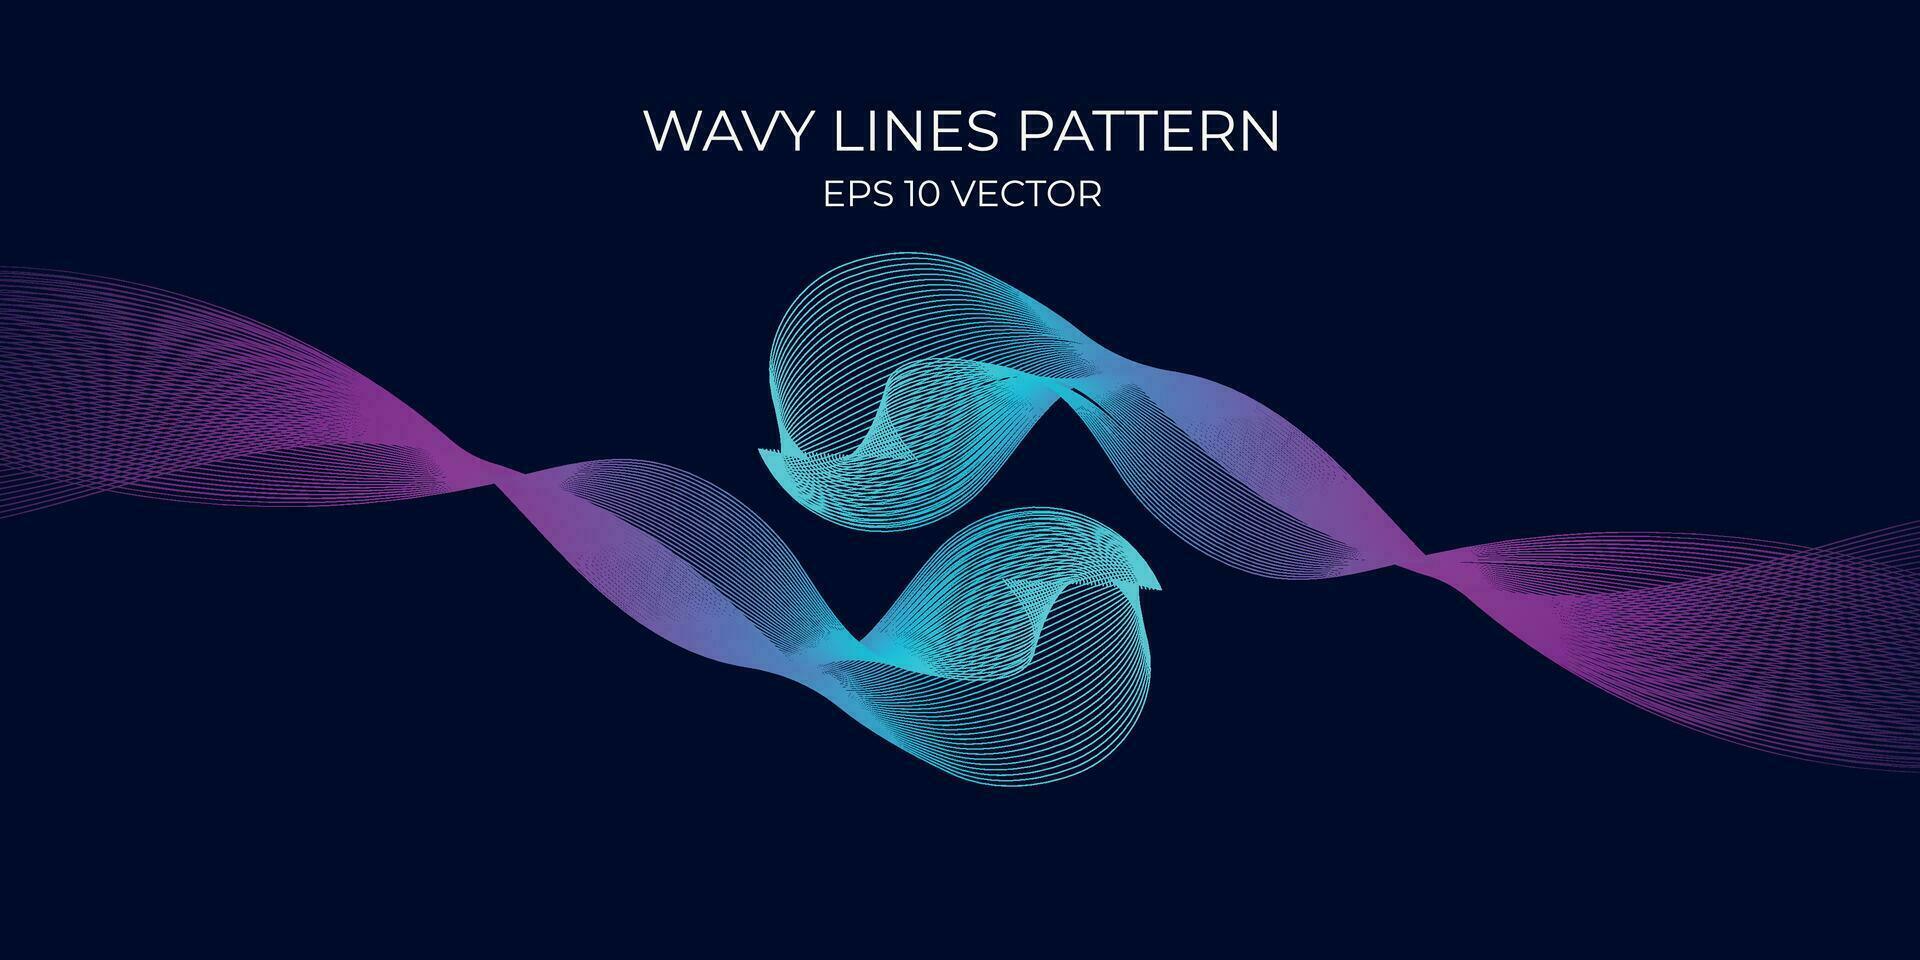 vektor vågig rader mönster slät kurva strömmande dynamisk blå grön lutning ljus isolerat på Marin bakgrund. begrepp för teknologi, digital, kommunikation, vetenskap, musik.